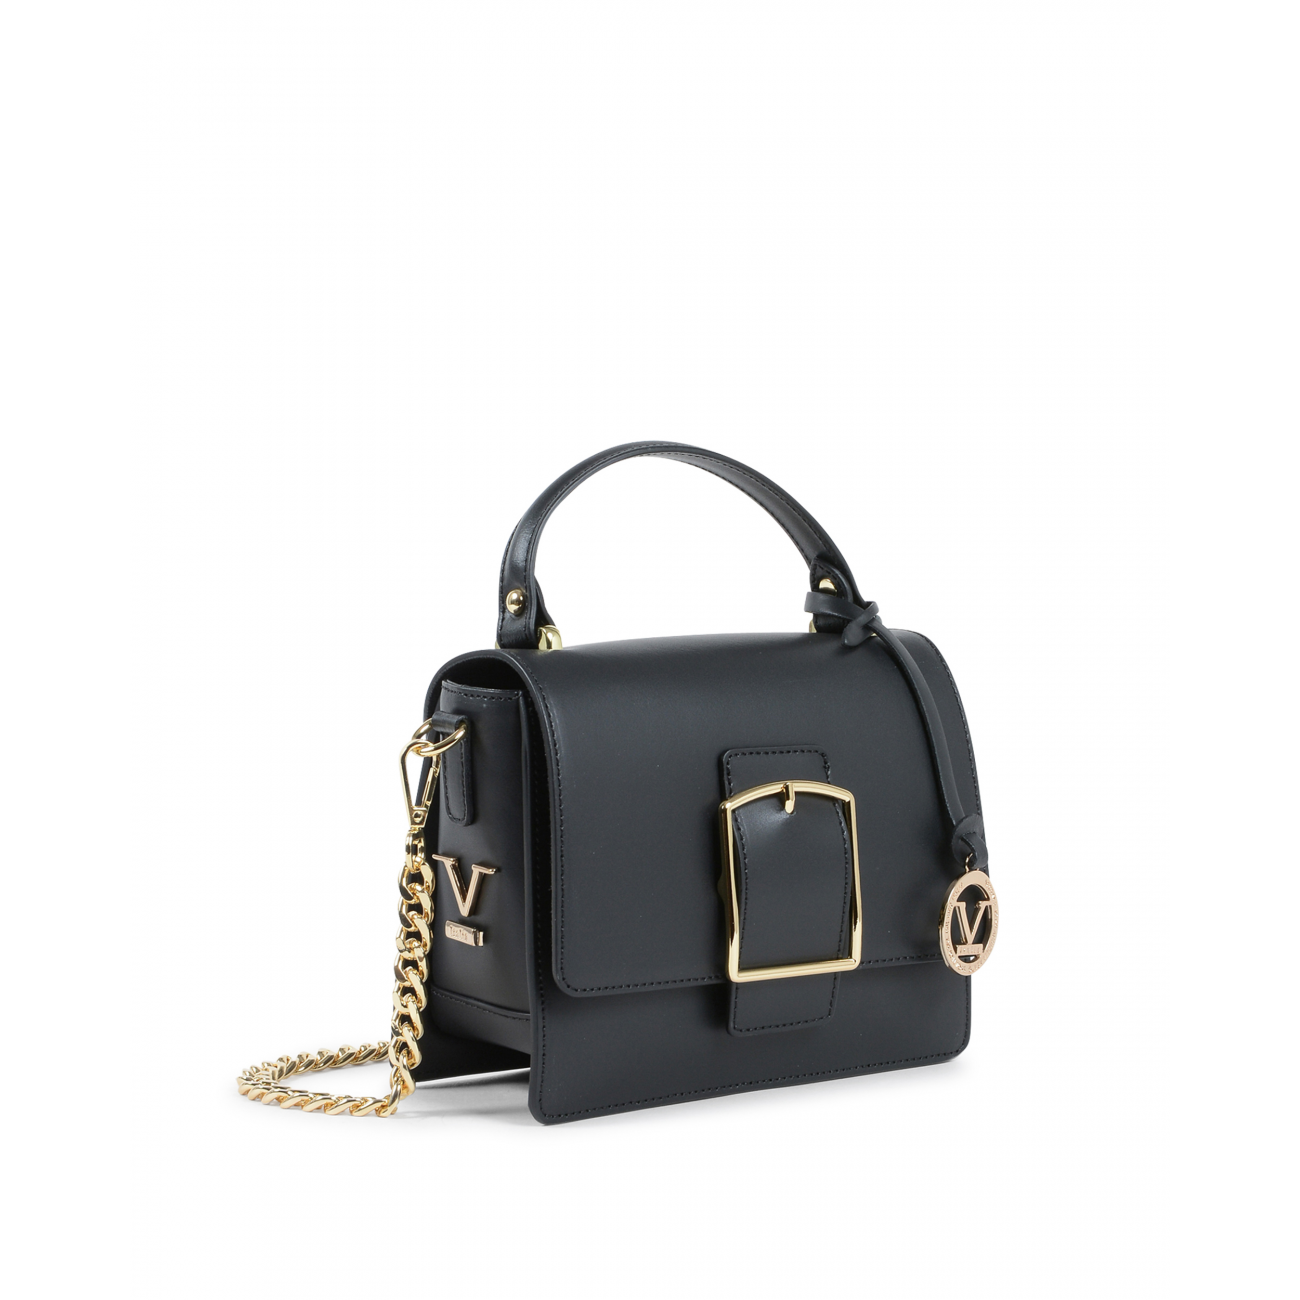 19V69 Italia Womens Handbag Black V505 52 RUGA NERO